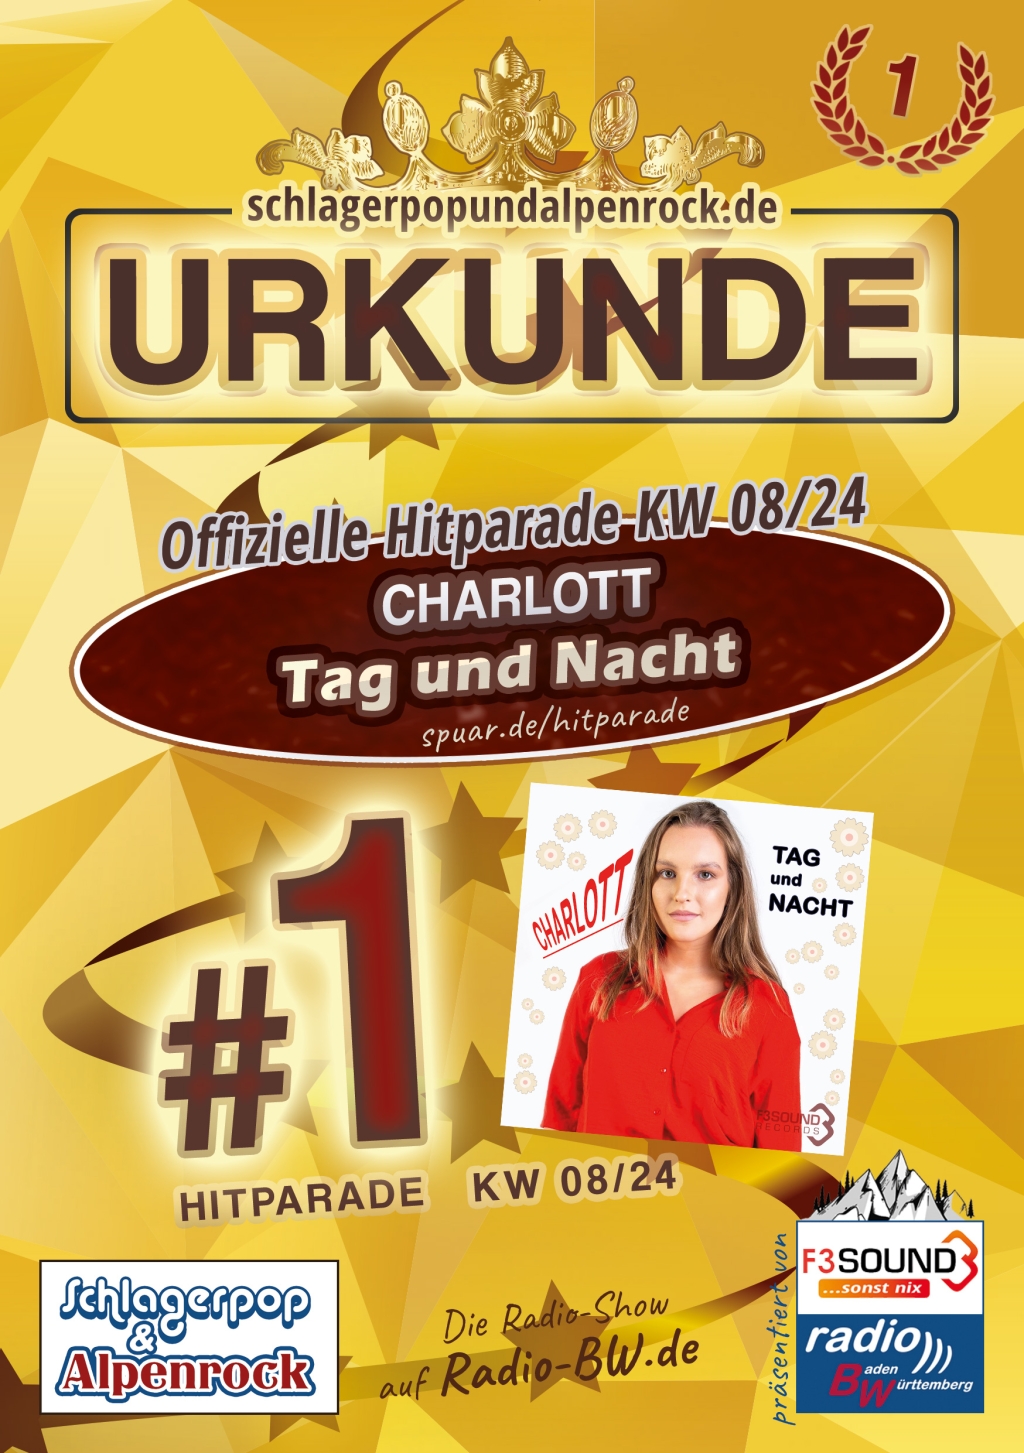 URKUNDE - Offizielle Hitparade KW 08/24